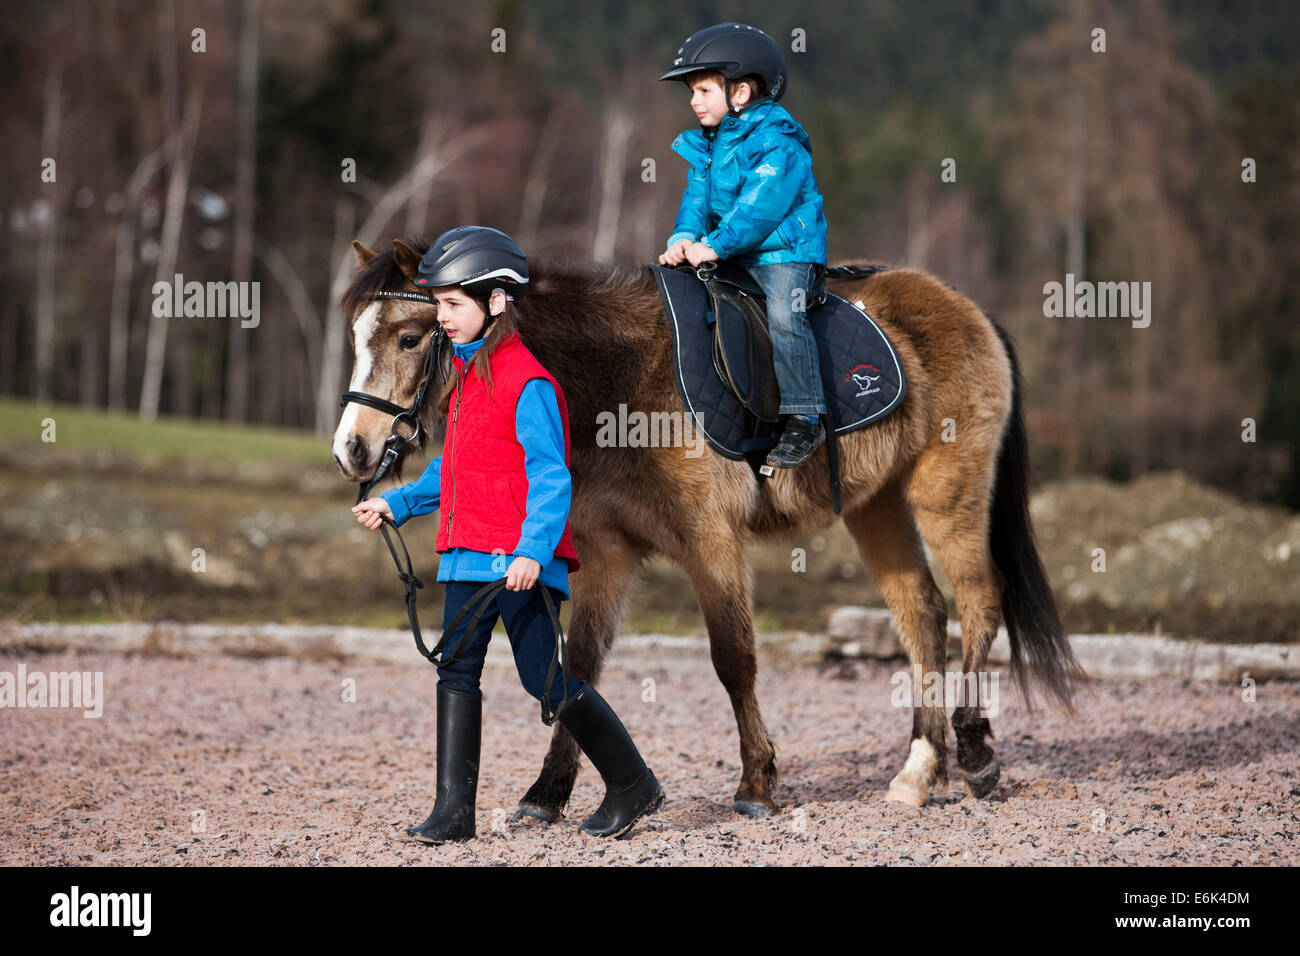 Mädchen führt ein Pony mit einem kleinen Kind reiten, dun mit einen Zaum, Tirol, Österreich Stockfoto